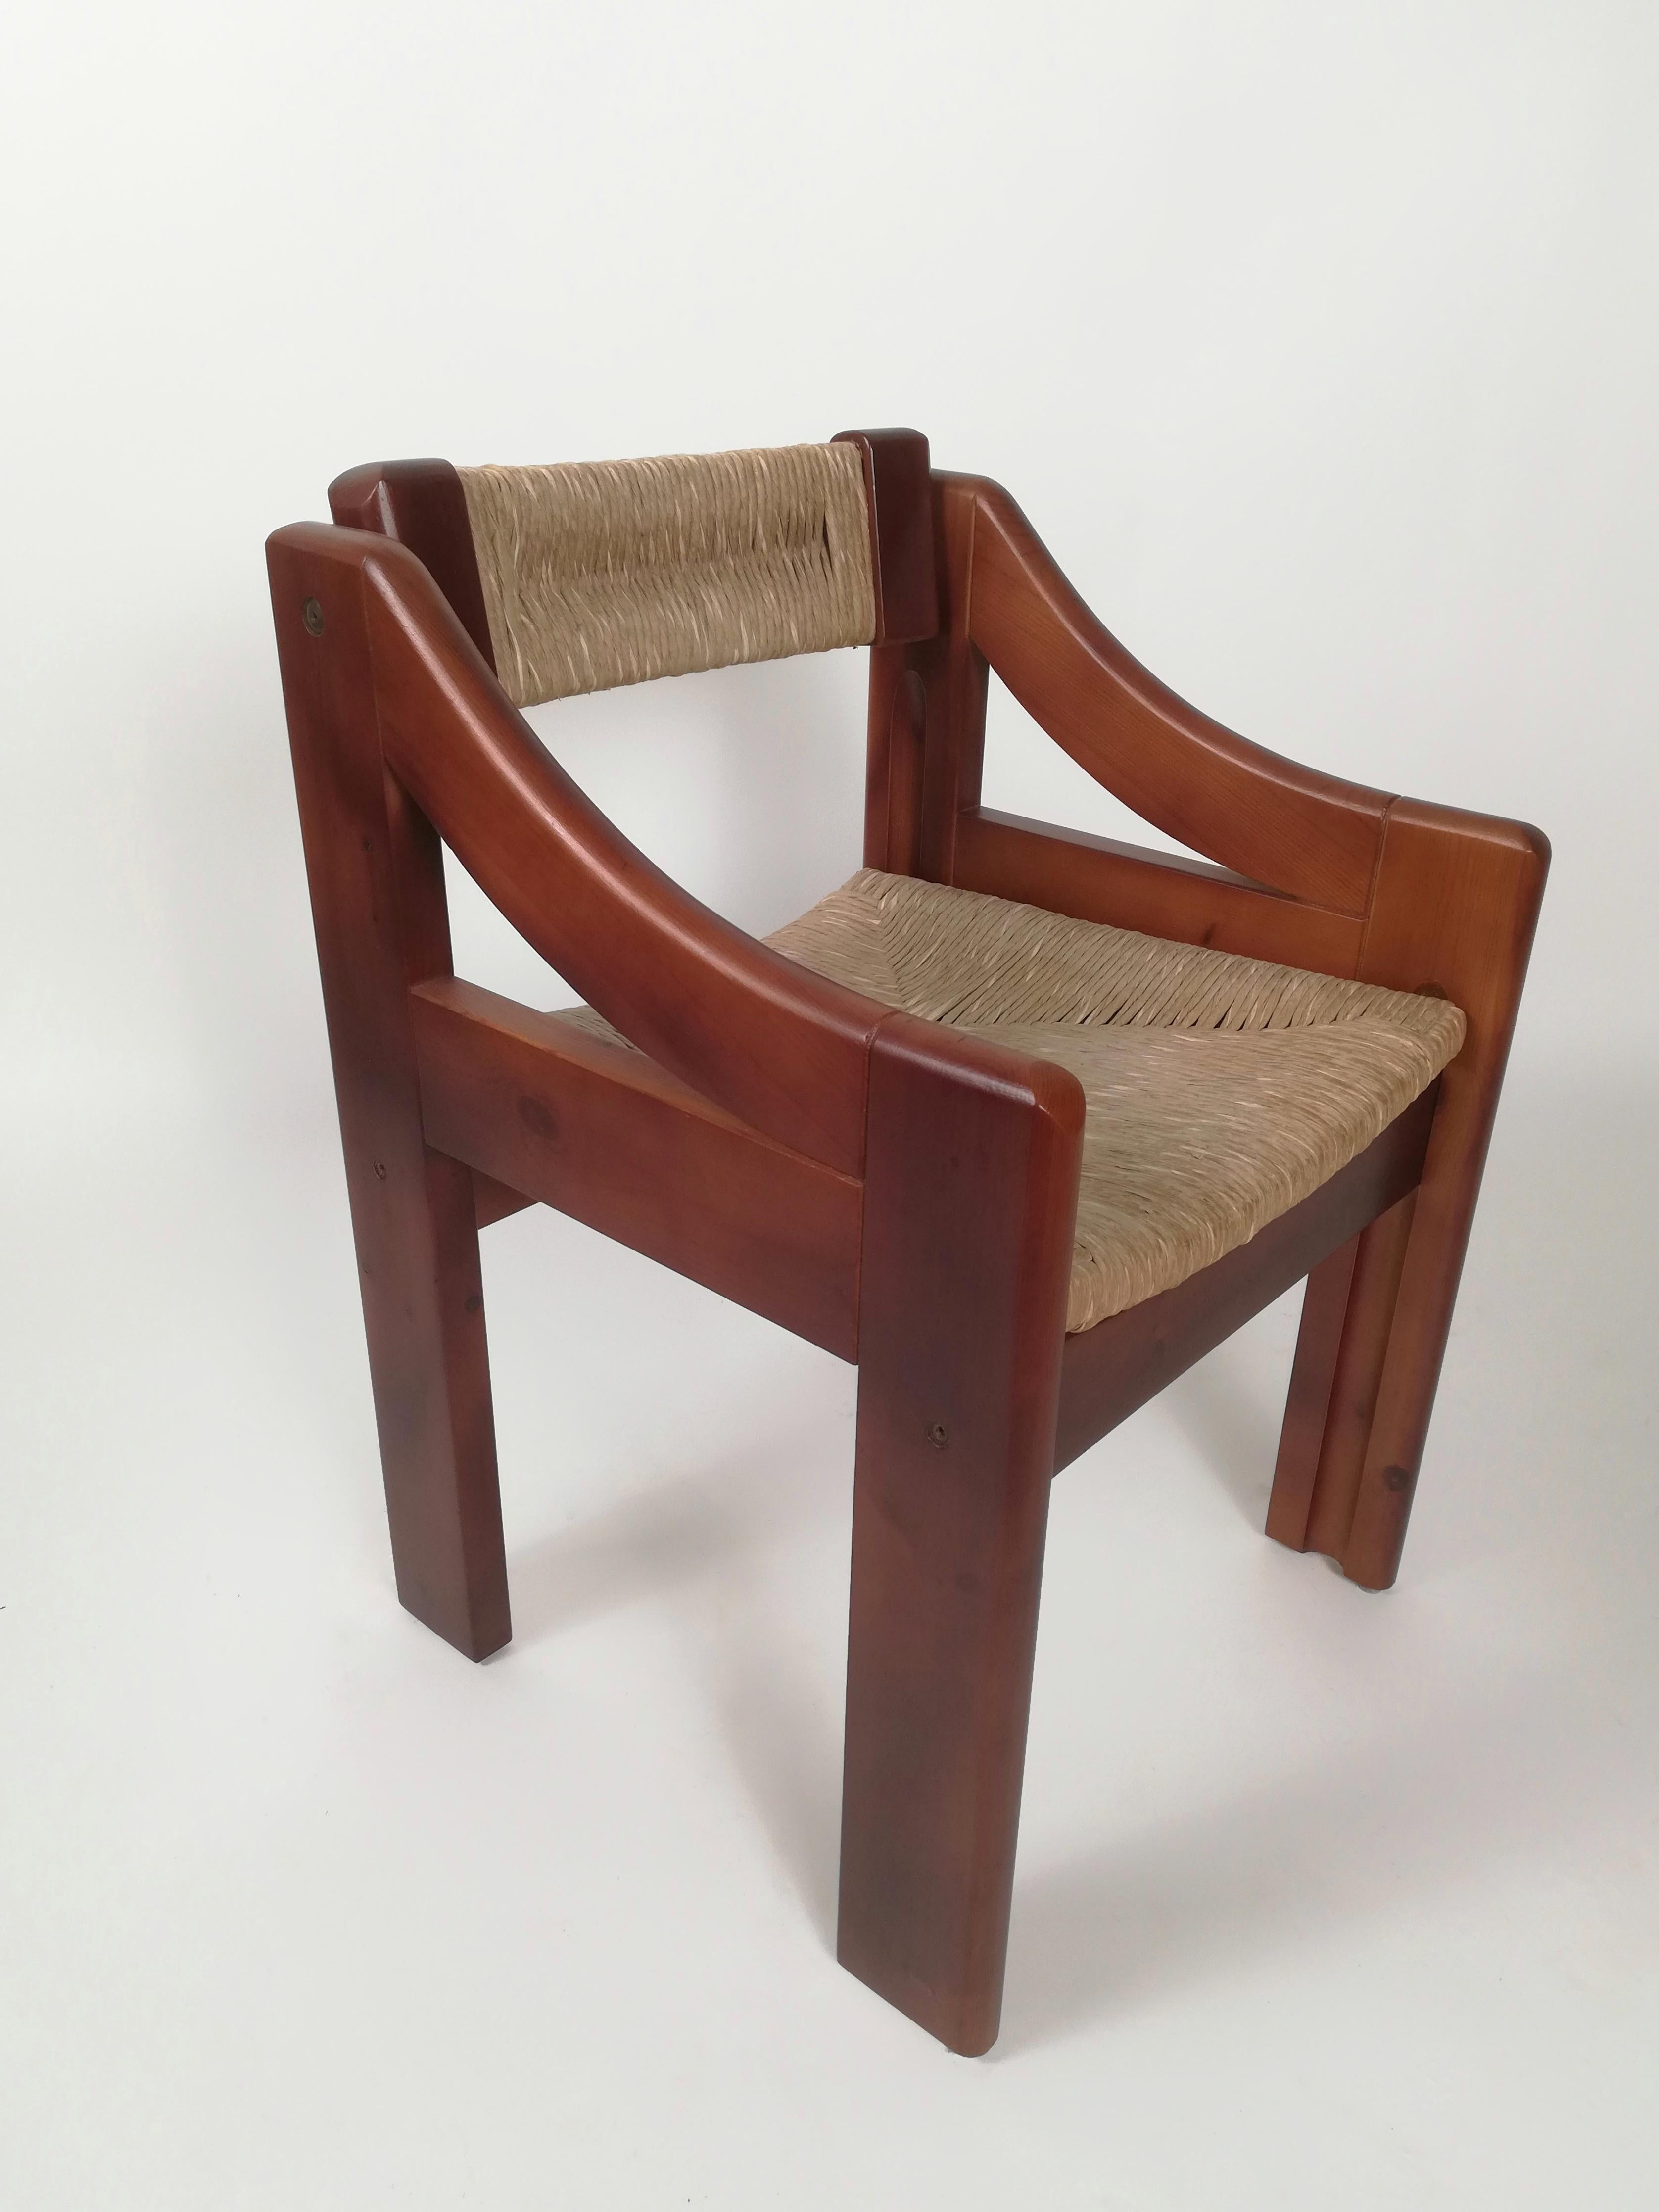 Ces 4 chaises faites de pin massif et de bois de paille s'inspirent des séances populaires de la tradition rurale italienne, ainsi que du modèle 